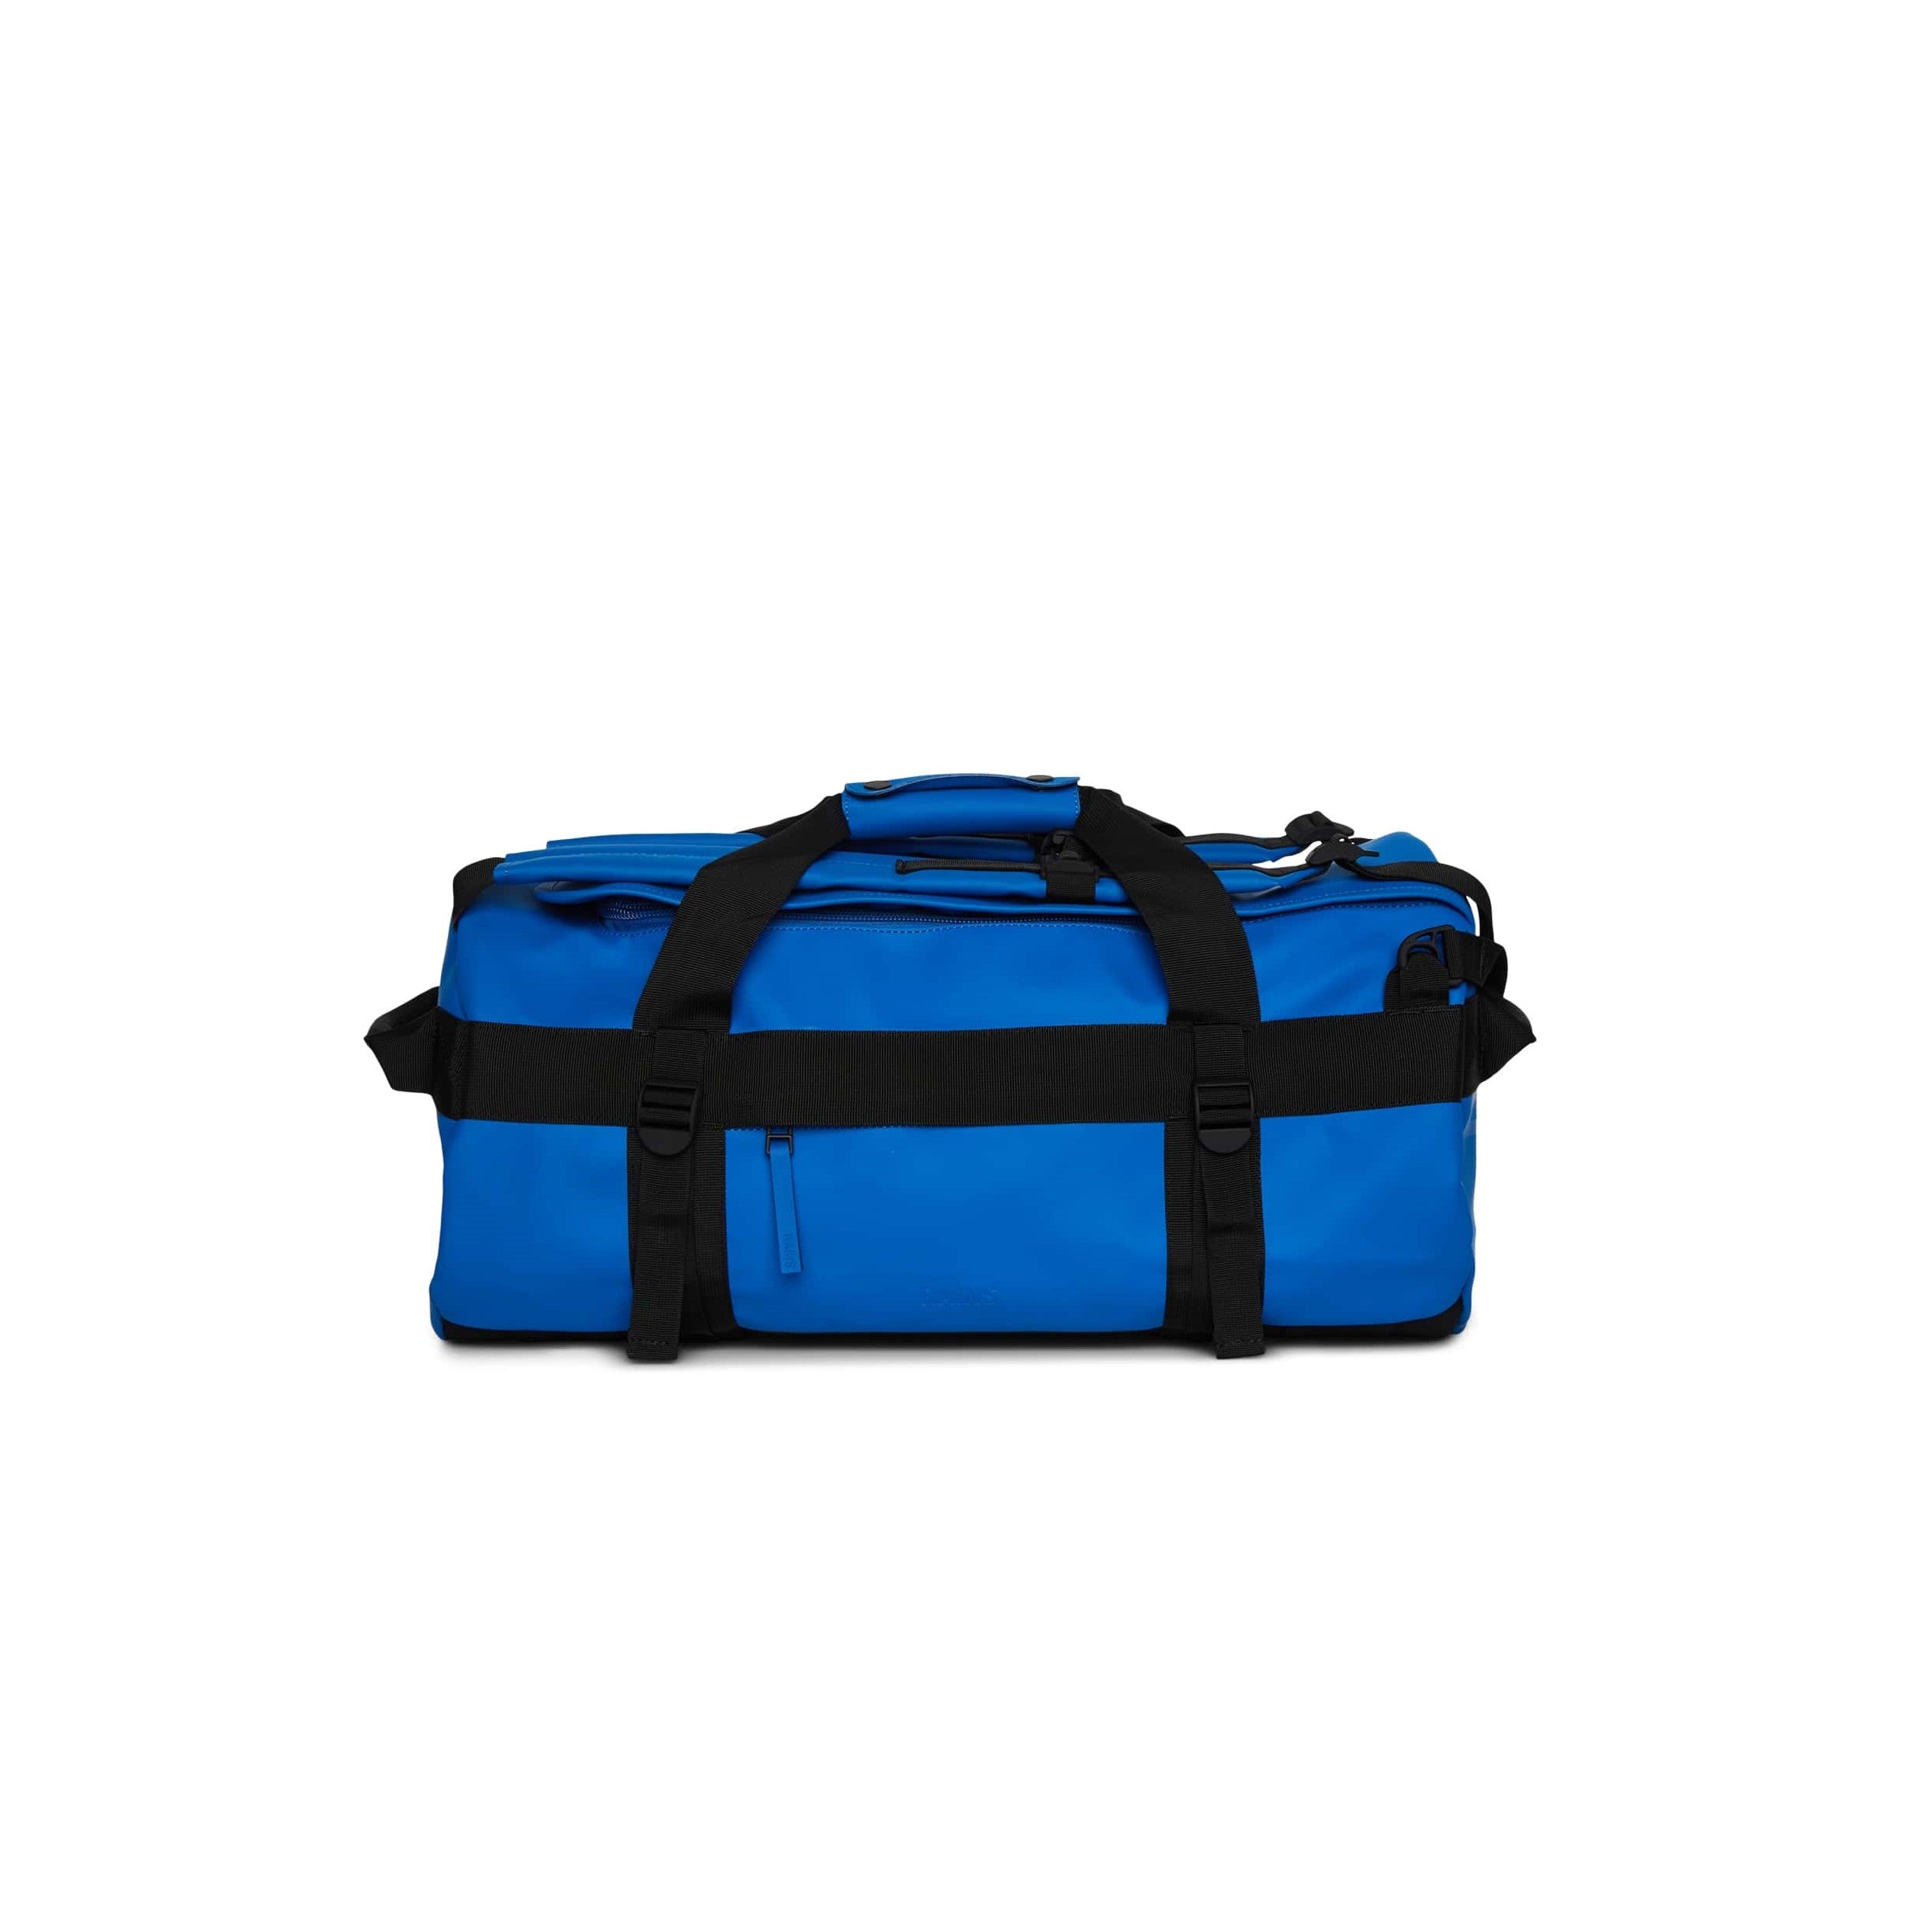 Blå duffelbag med sorte detaljer, som er en kombinasjon av bag og sekk fra Rains, modell Texel, vist fra fronten.